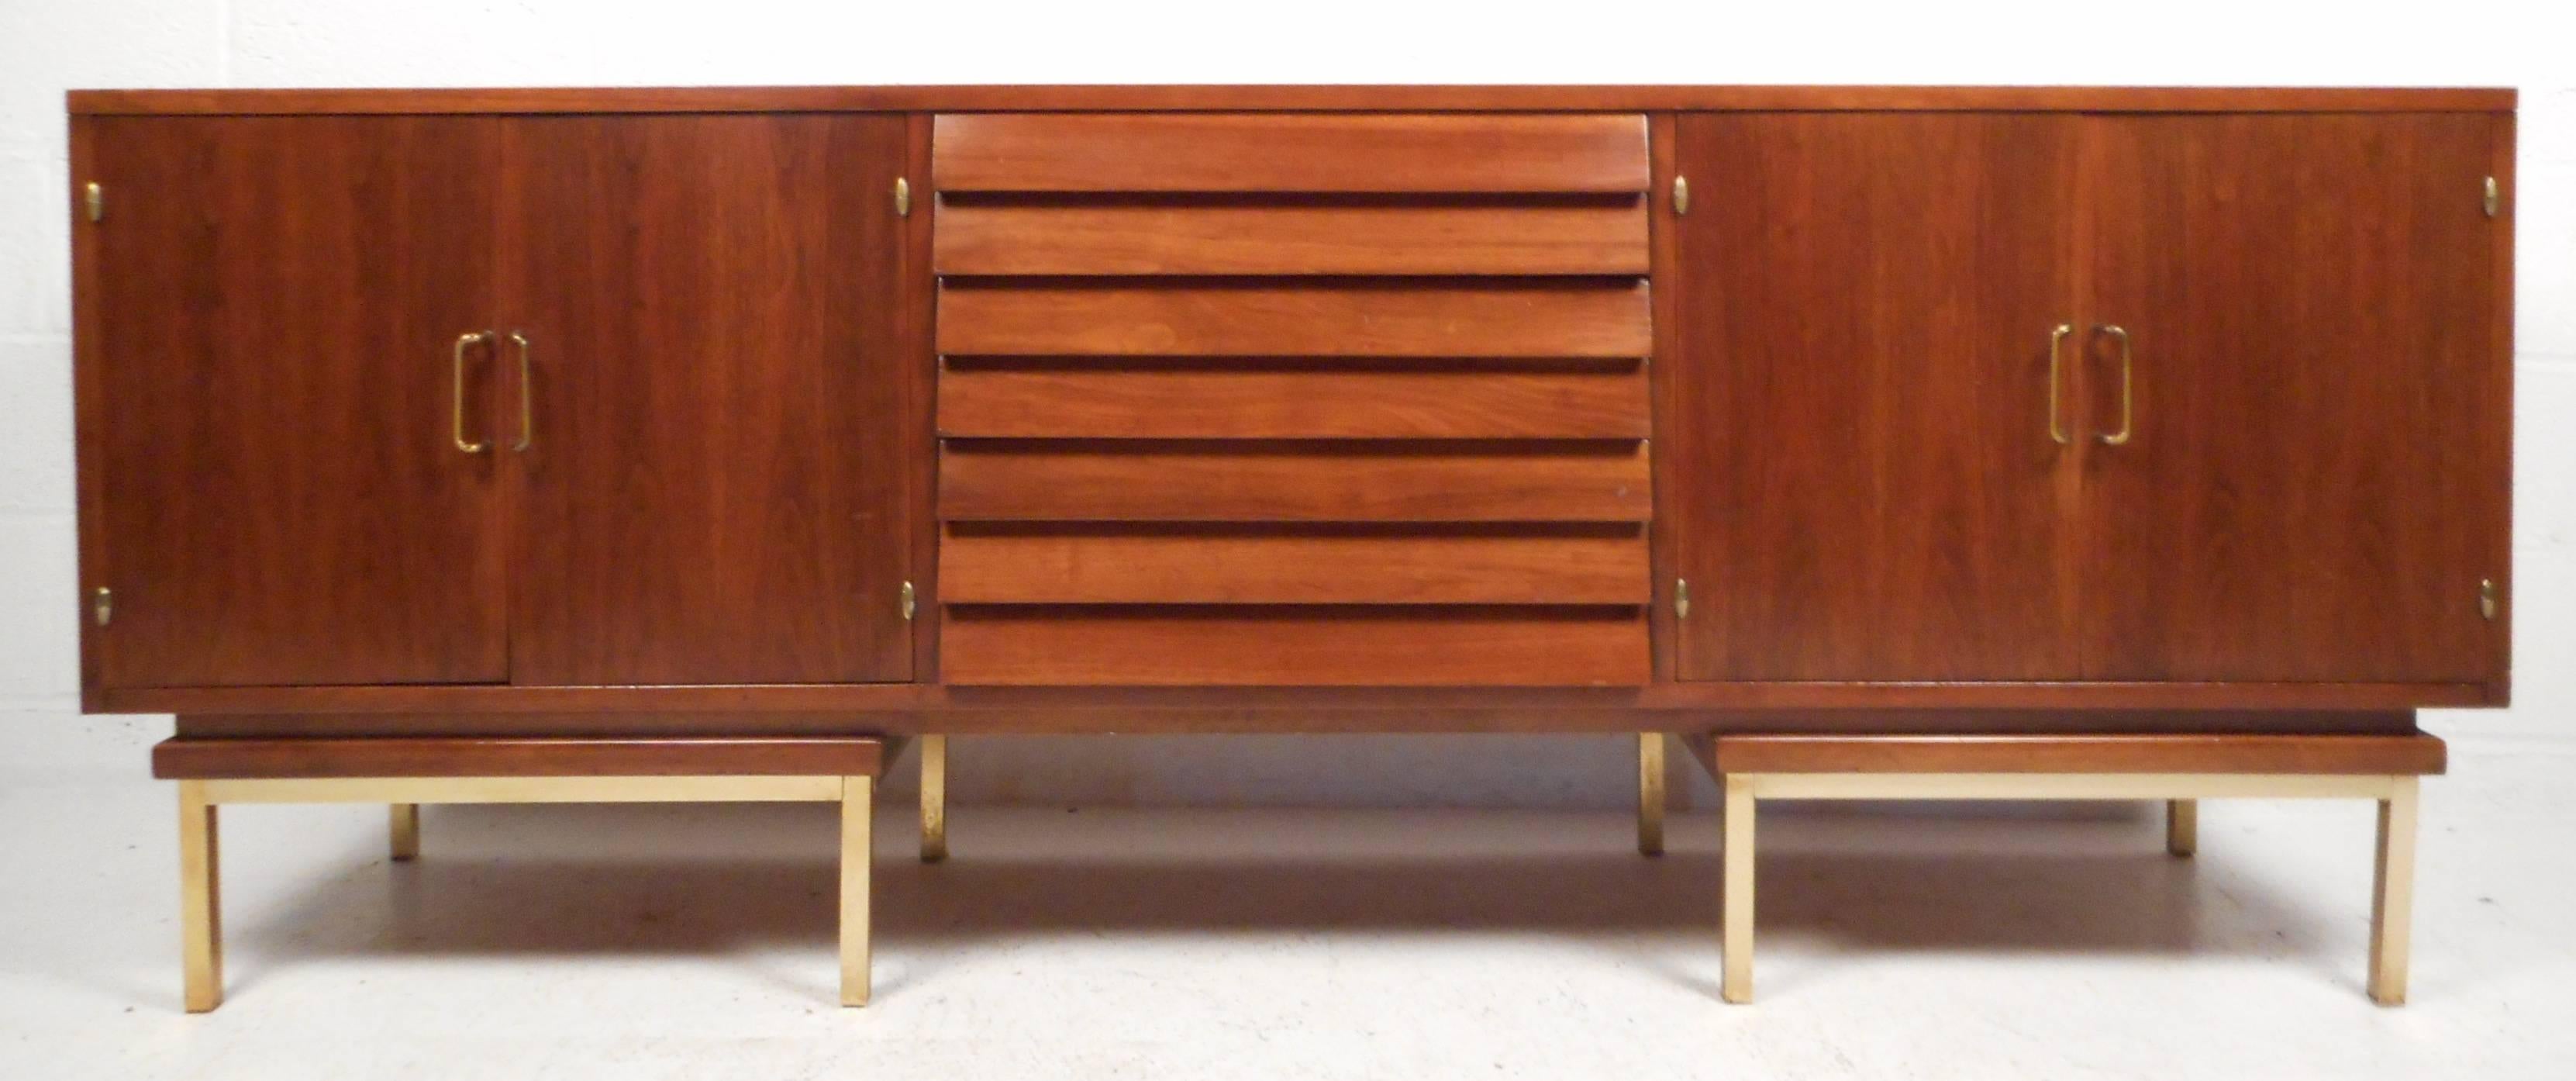 Dieses massive Sideboard im modernen Vintage-Stil verfügt über drei Schubladen mit Lamellen in der Mitte und zwei große Ablagefächer an den Seiten. Das reiche Walnuss-Finish, die skulpturalen Messinggriffe und der einzigartige Messingsockel machen